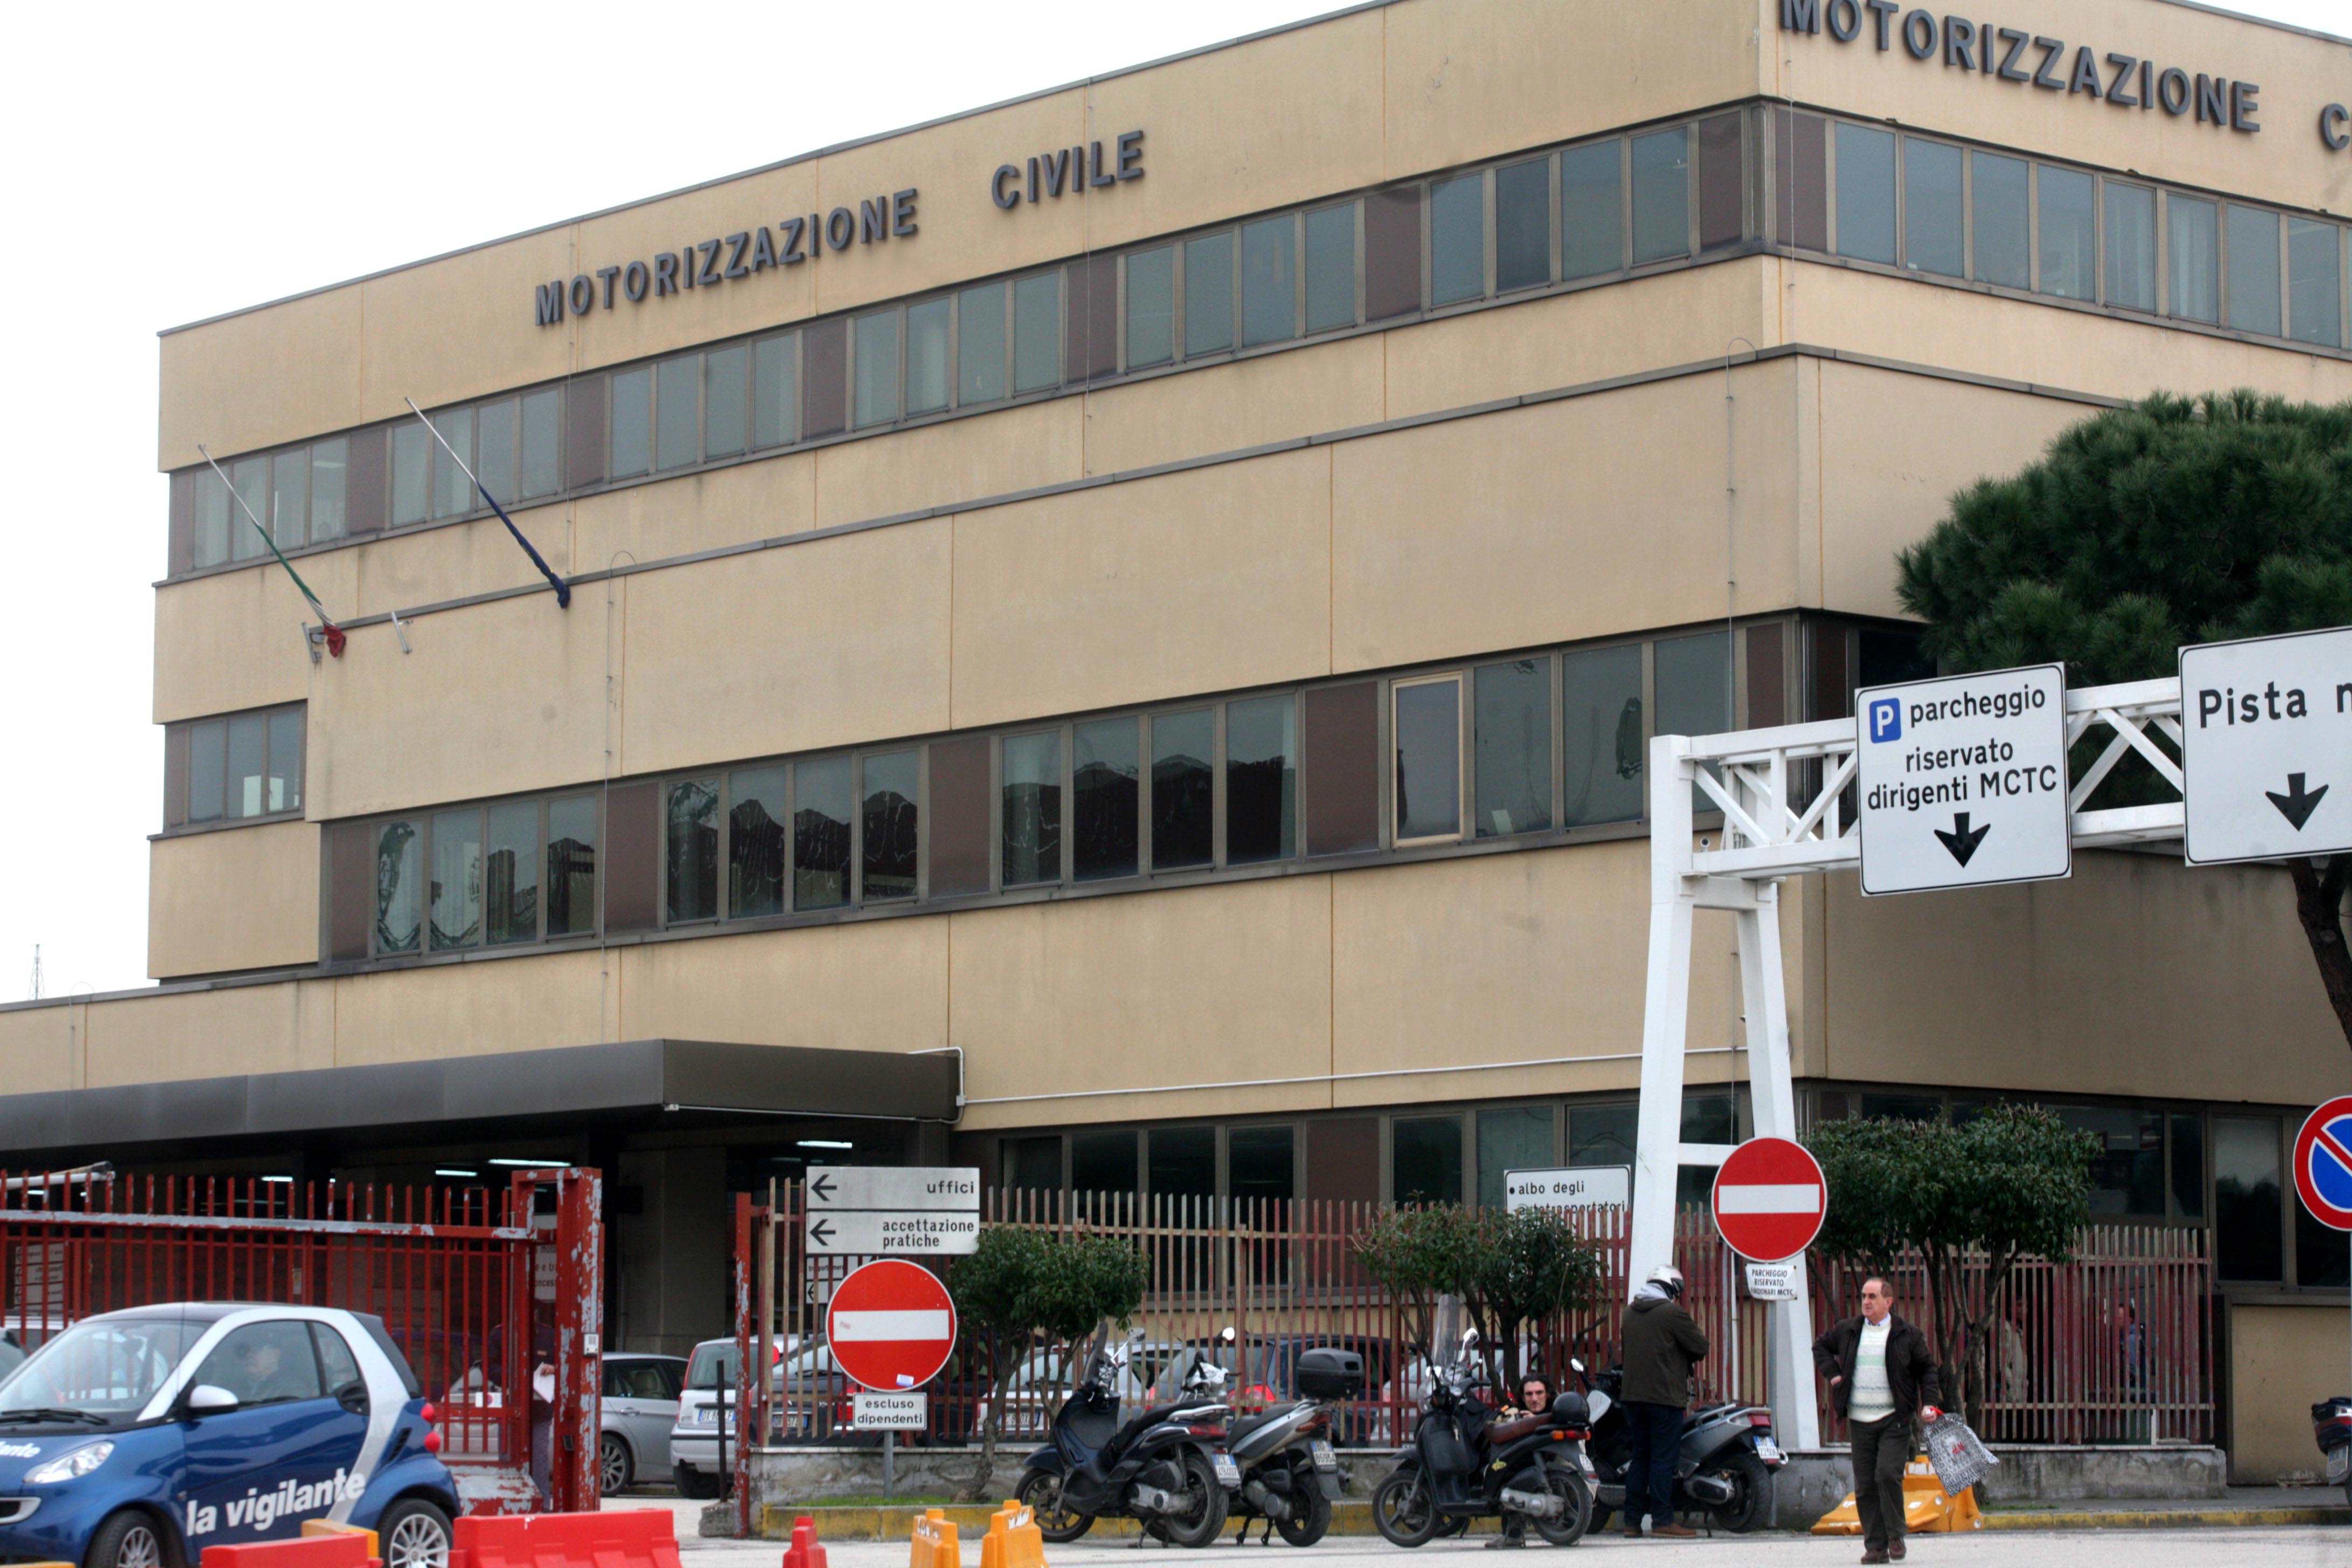  Napoli, esami della patente alla motorizzazione civile: denunciato 30enne scoperto con un telefonino